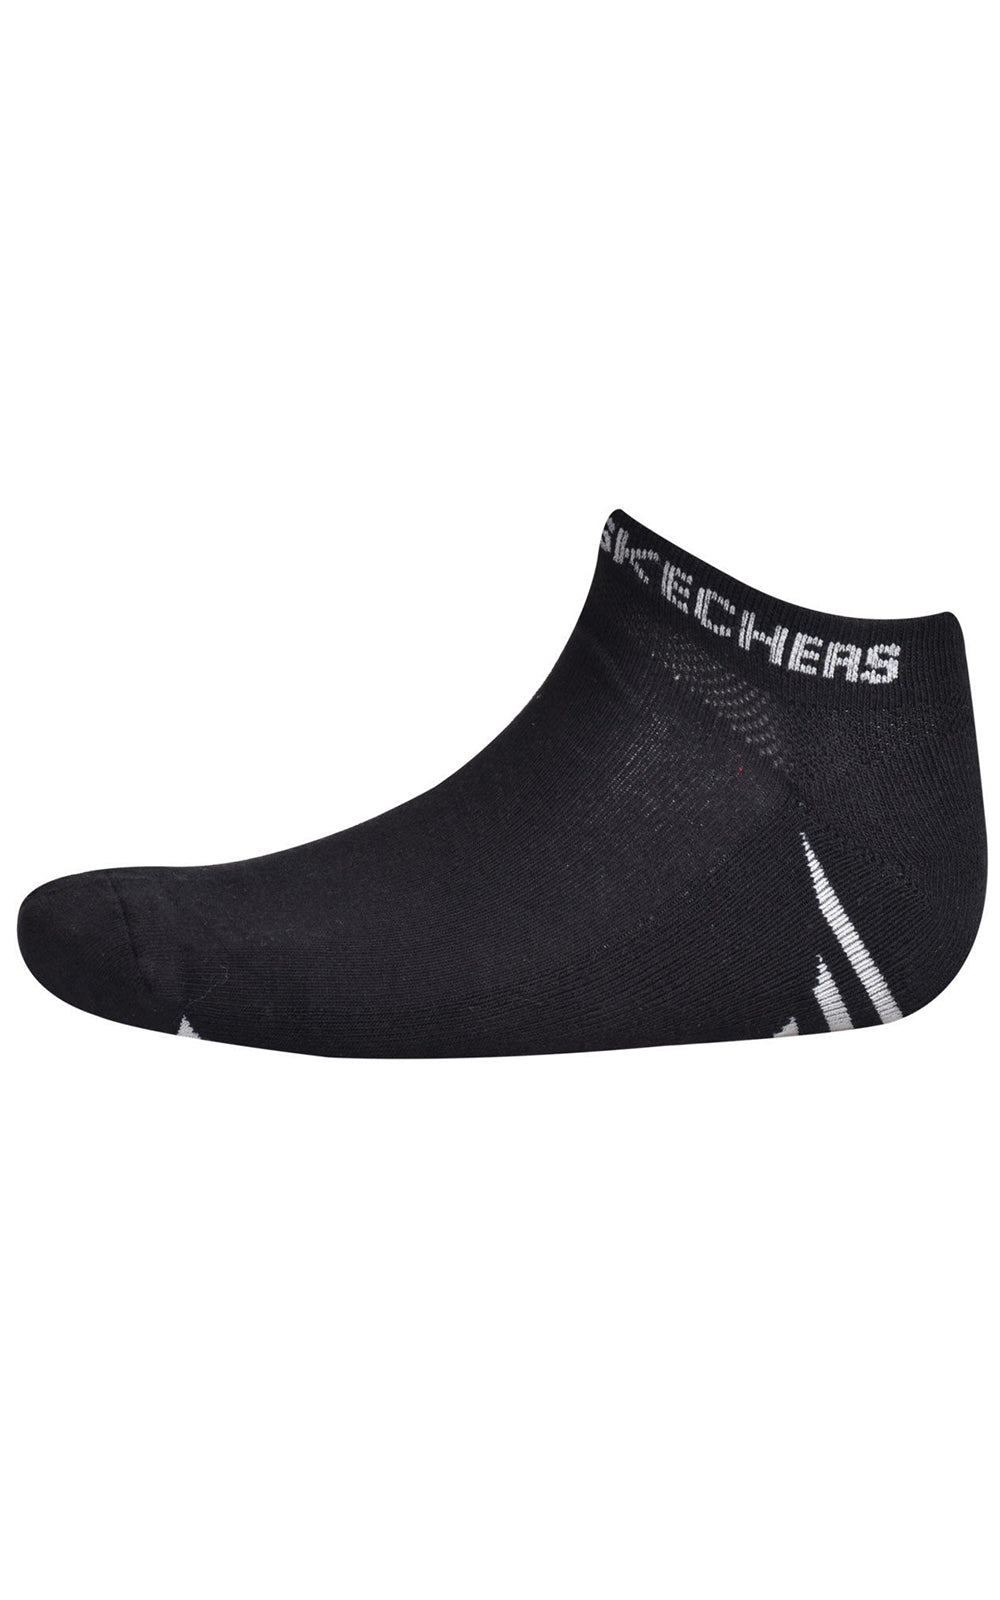 Skechers Socks Assorted 12 Pack